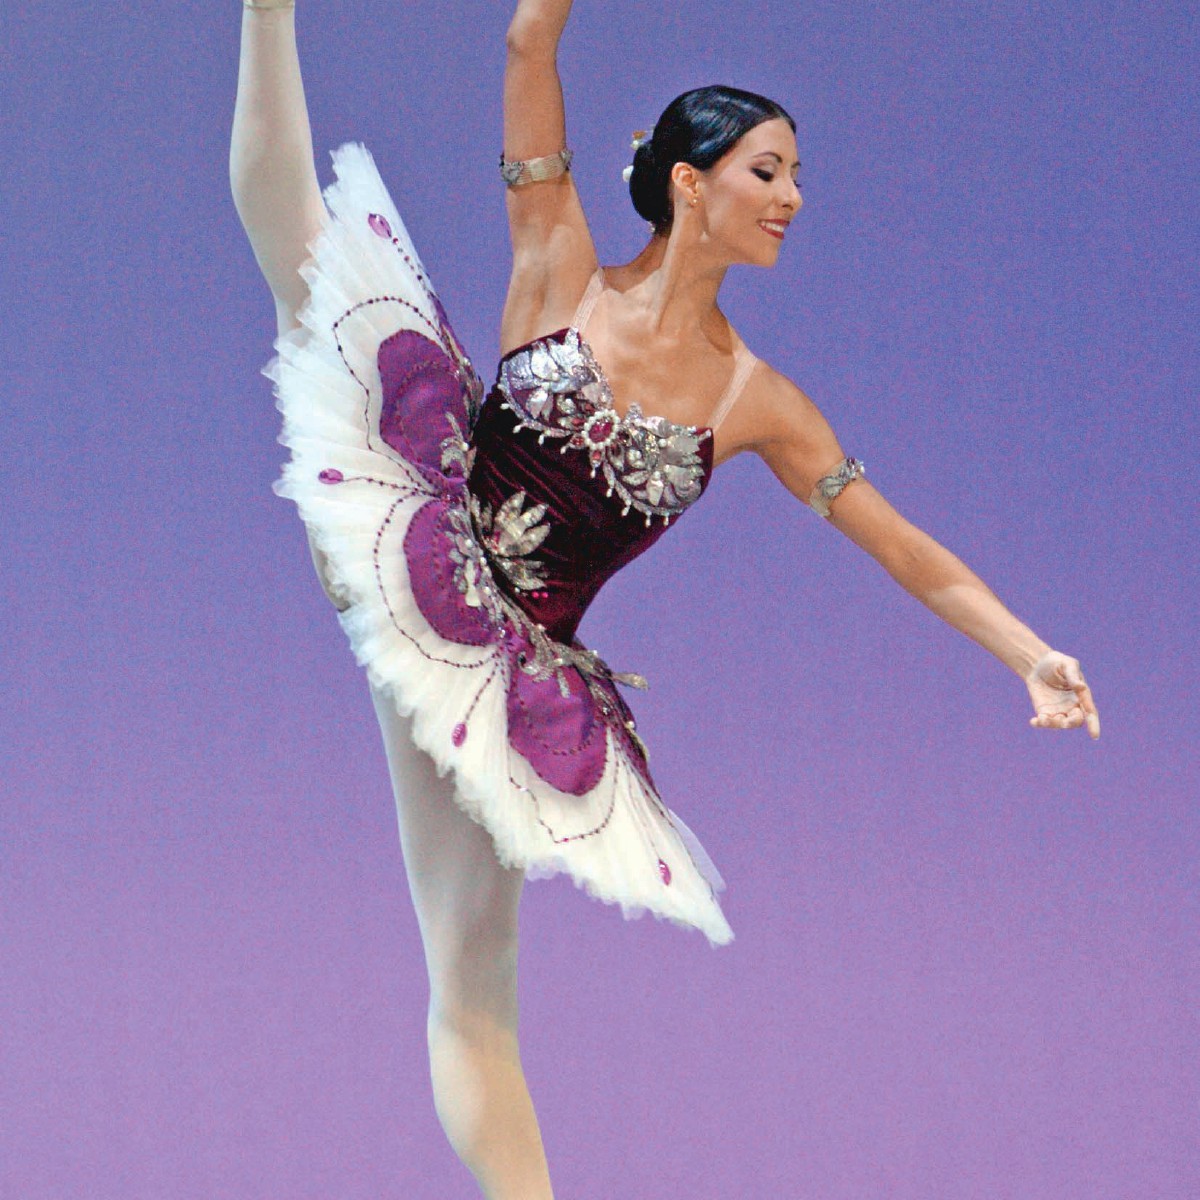 La bailarina Elisa Carrillo gana el premio “Alma de la Danza” en Rusia